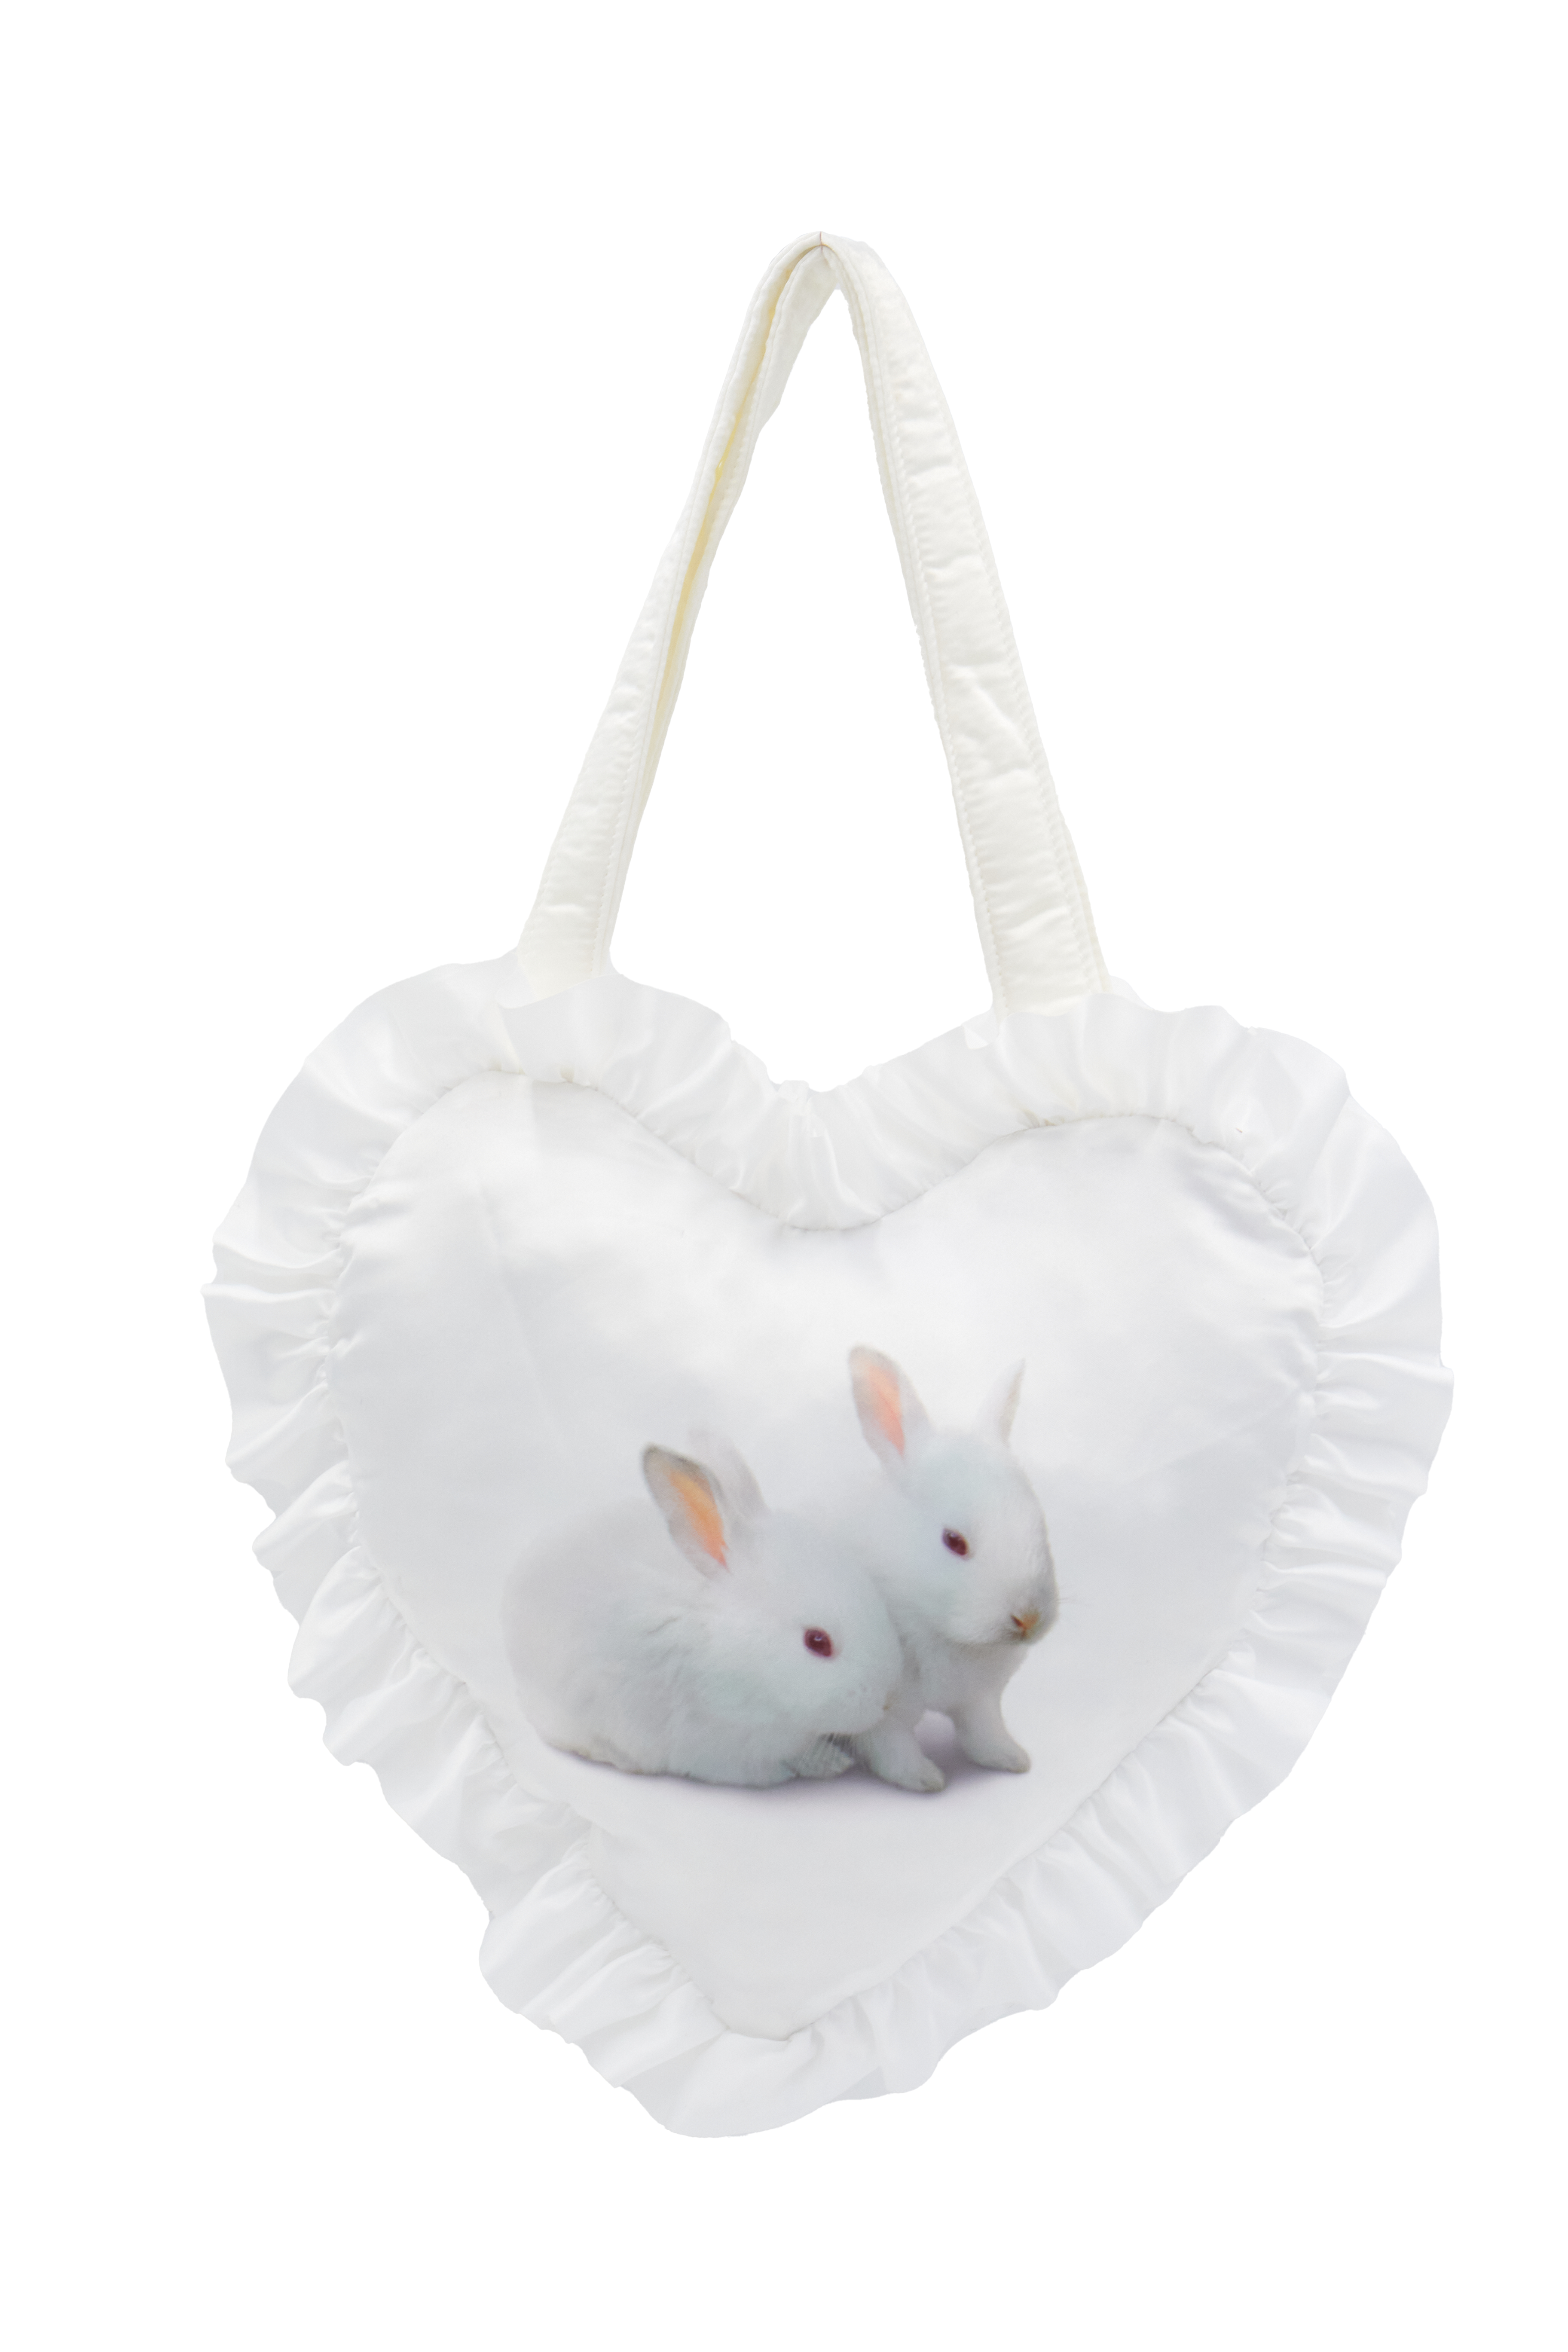 The Bunny Bag